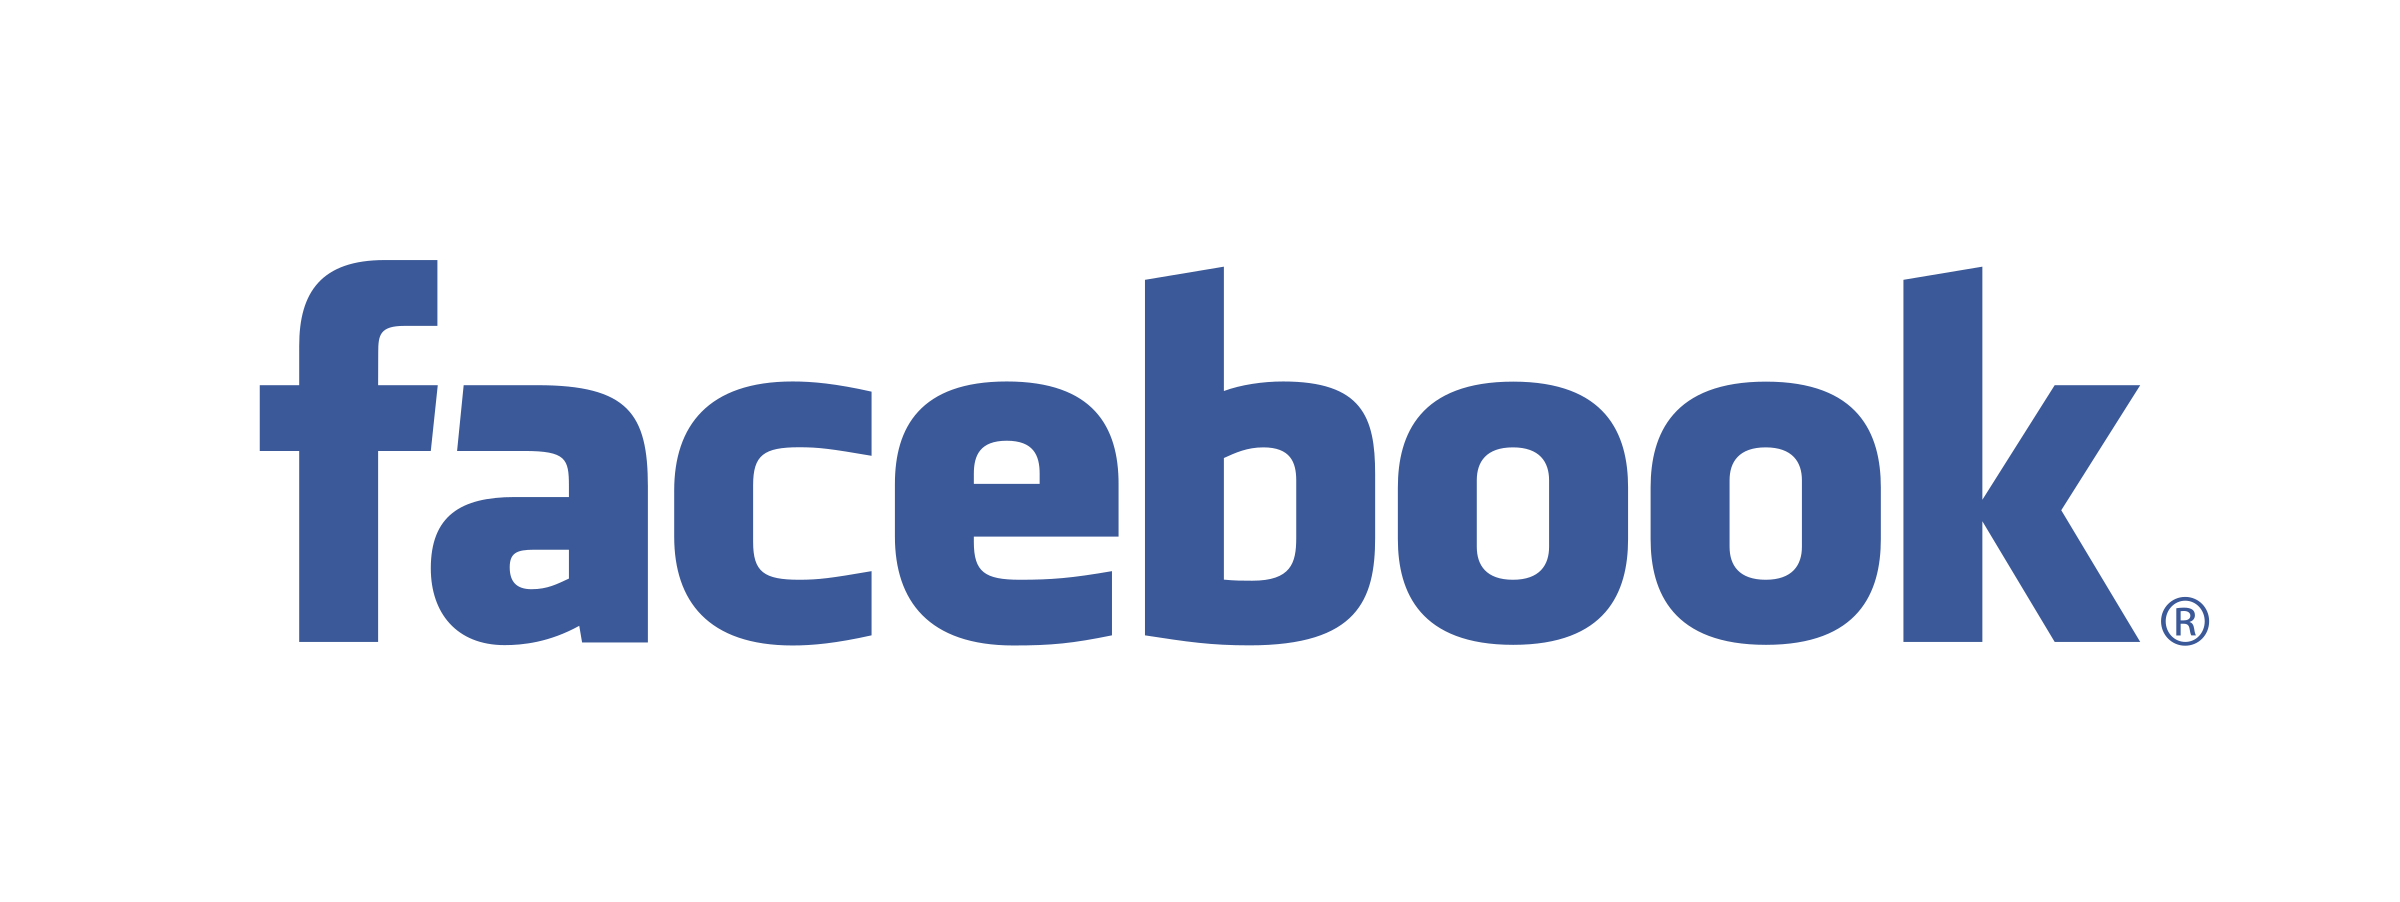 logo-facebook-facebook-logo-png-transparent-svg-vector-bie-supply-13